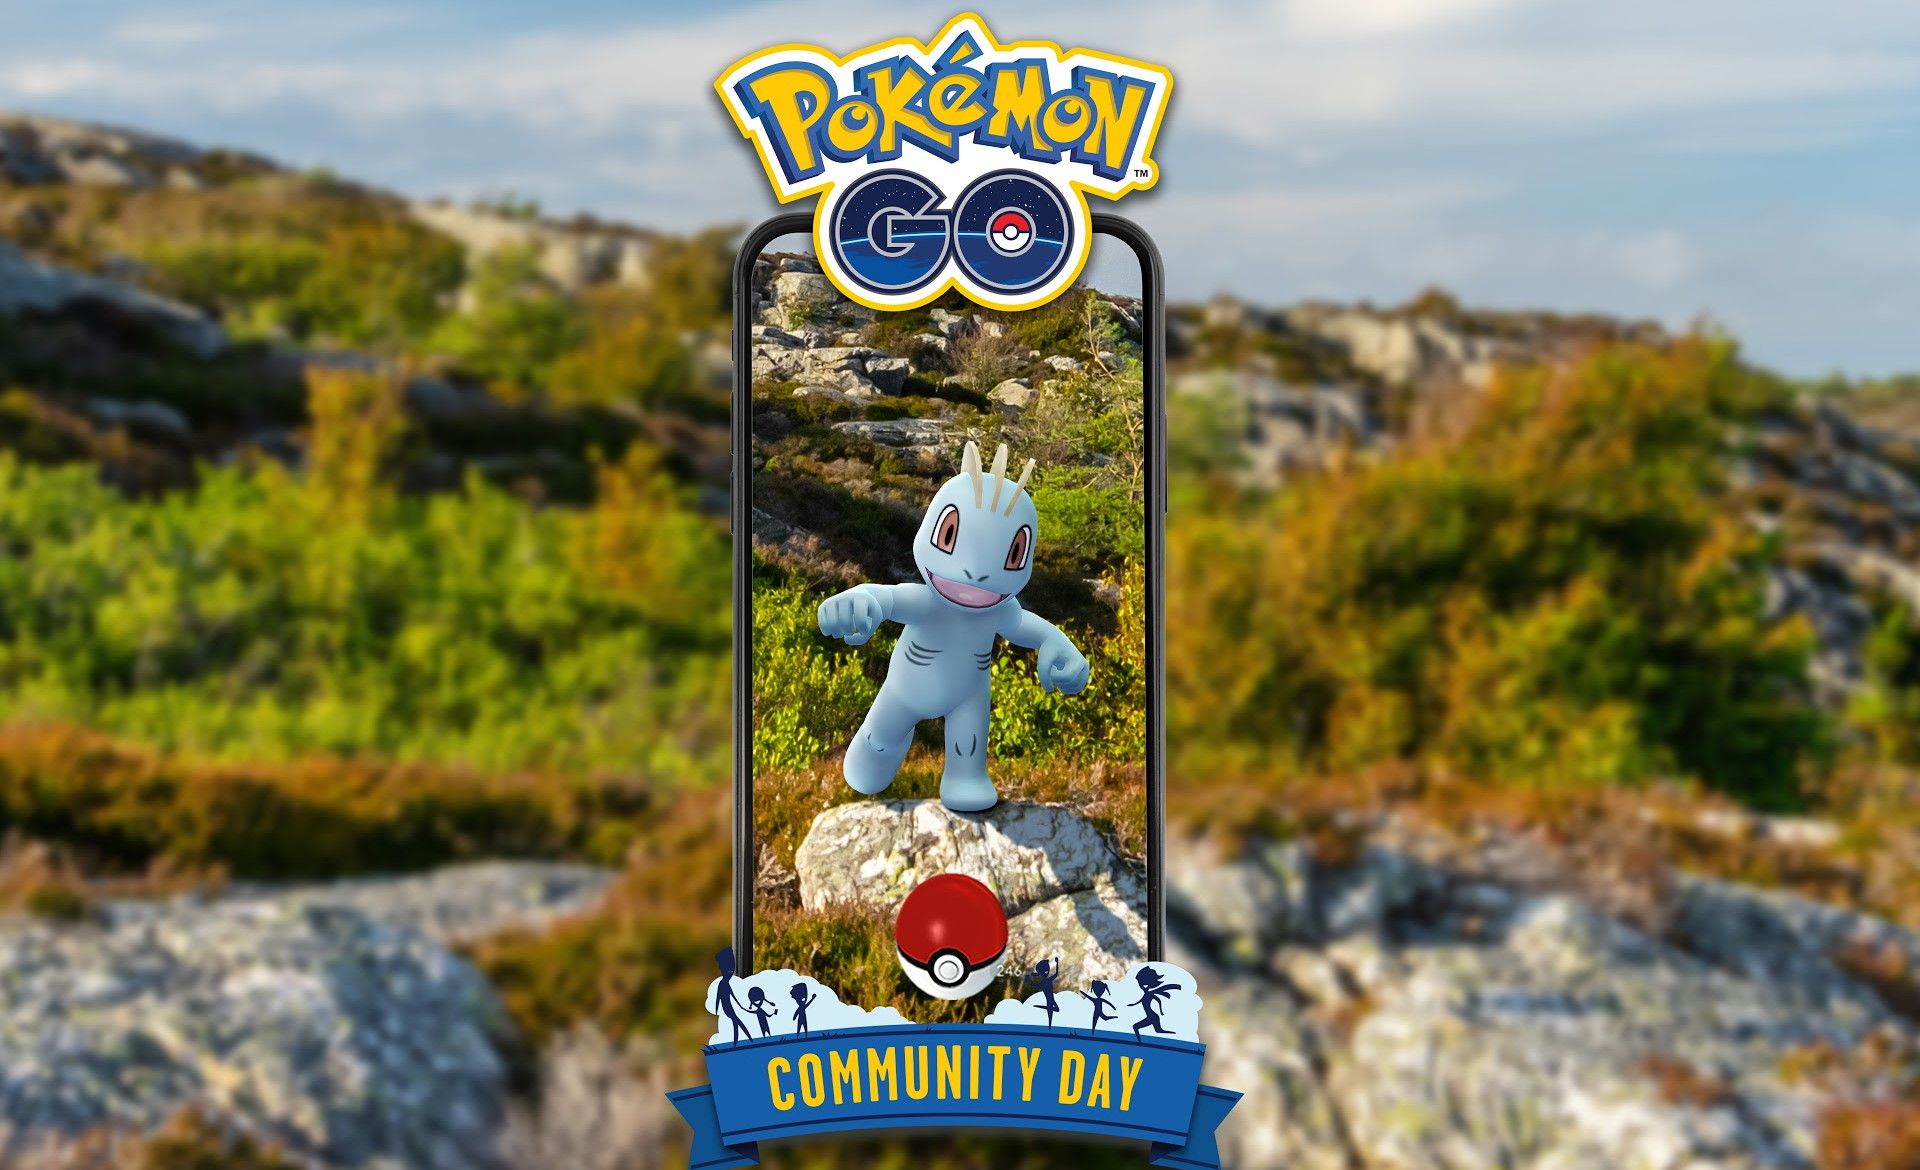 Pokémon GO Community Day